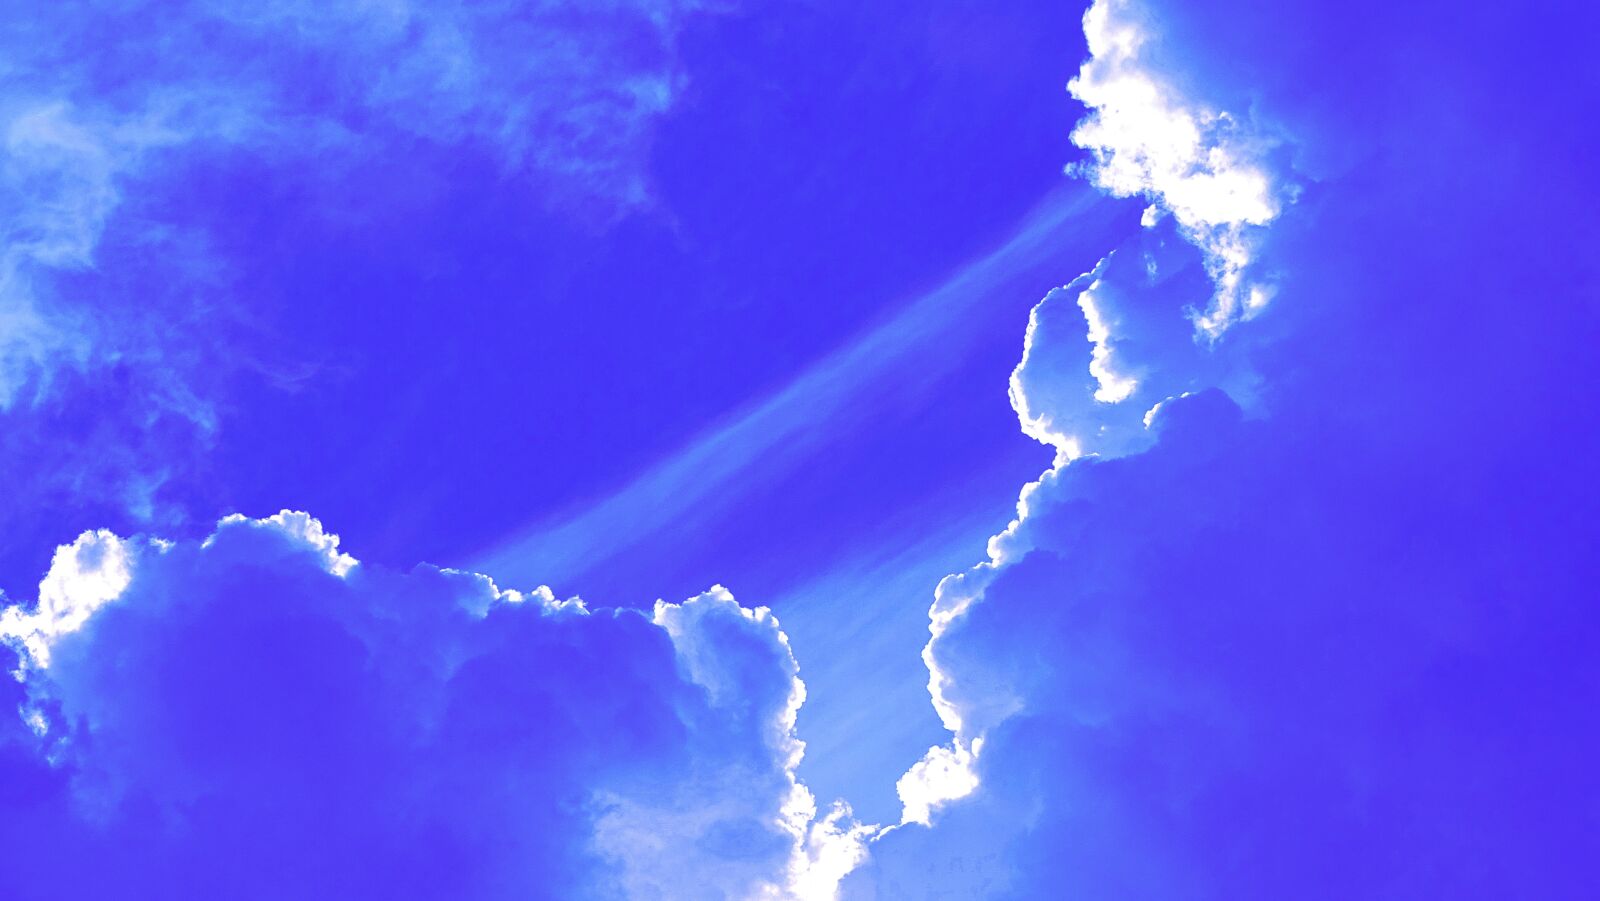 Sony DSC-HX400 sample photo. Clouds, sky, blue photography